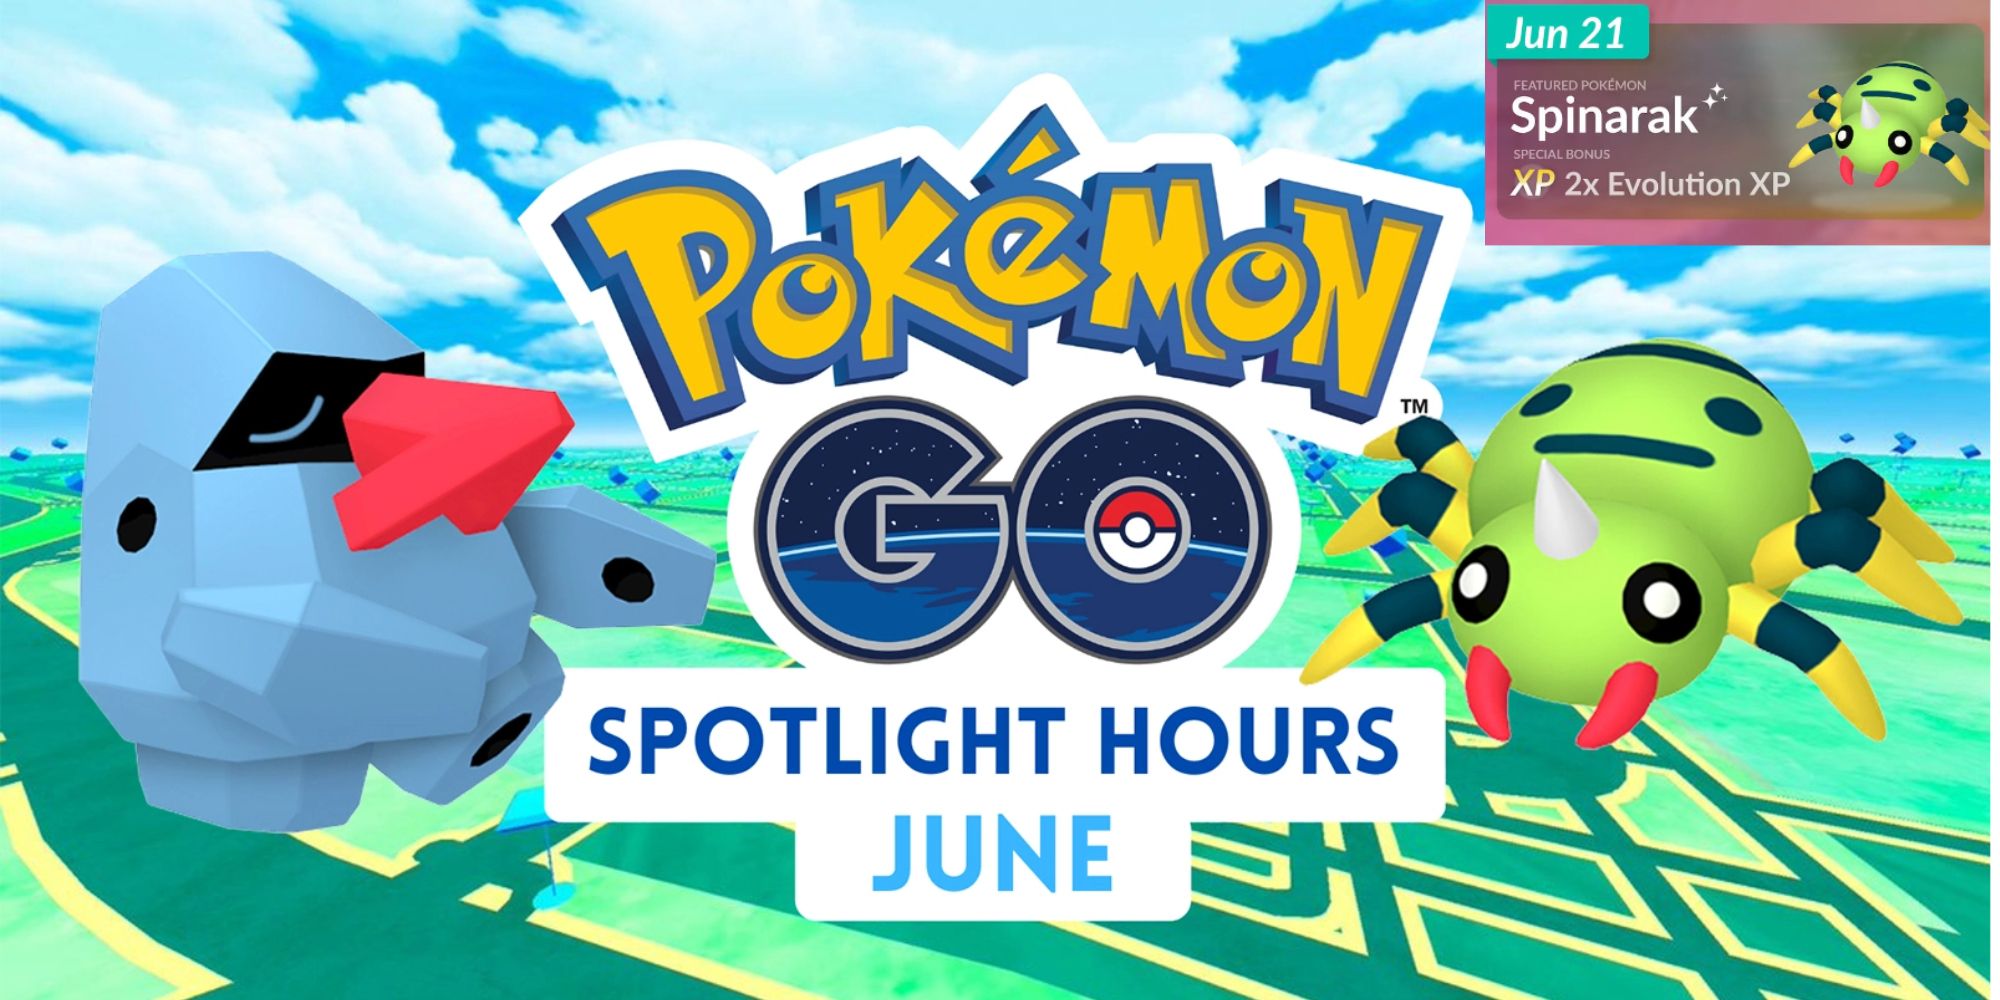 Pokemon Go Spinarak Spotlight Hours June